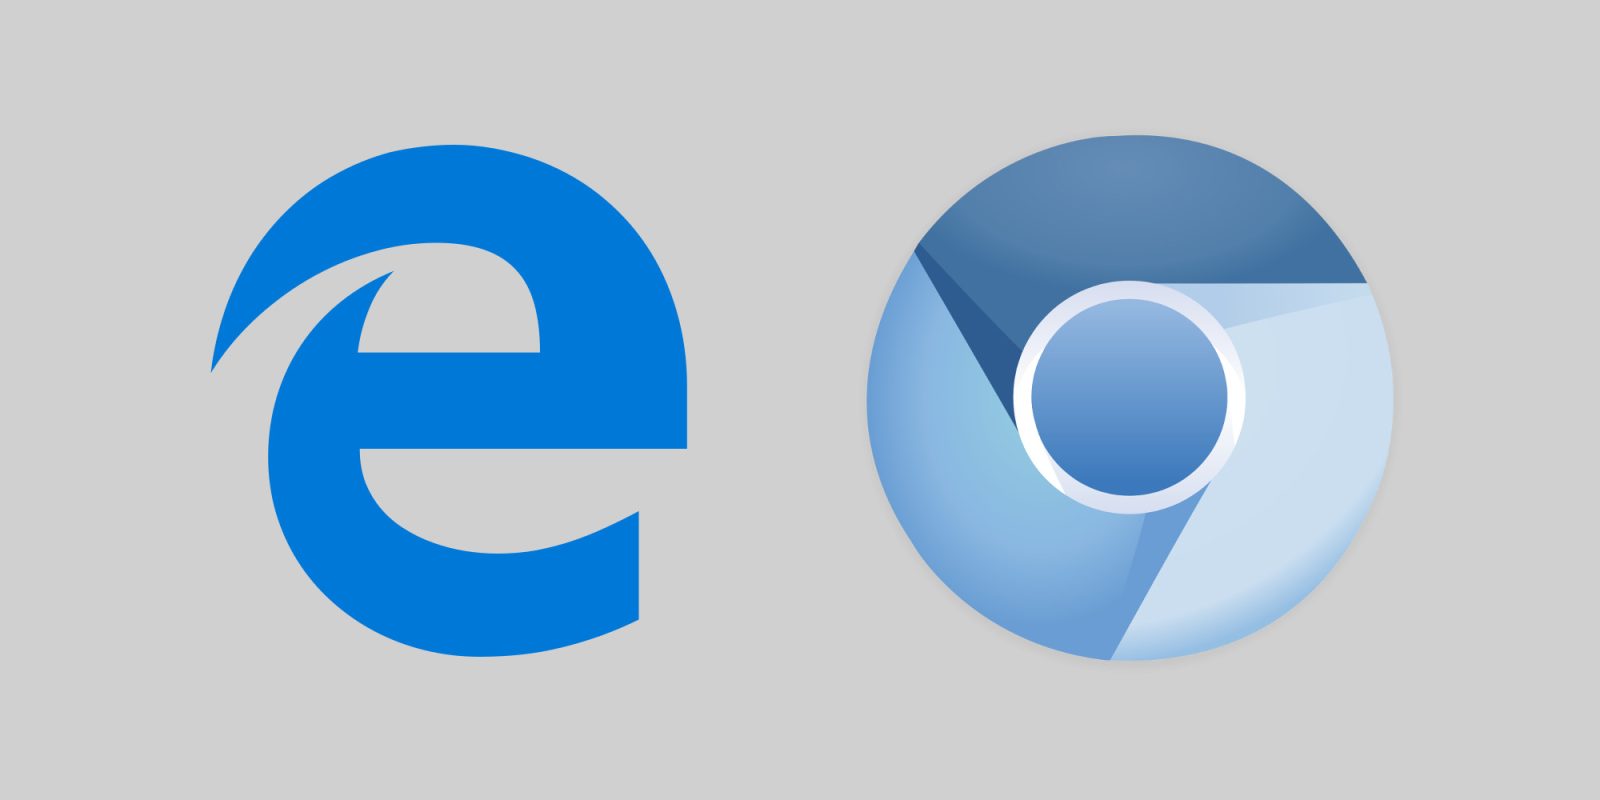 Chrome இல் படித்தல் பயன்முறையைச் சேர்க்க Google: எட்ஜ் அடிச்சுவடுகளைப் பின்பற்றுகிறதா?